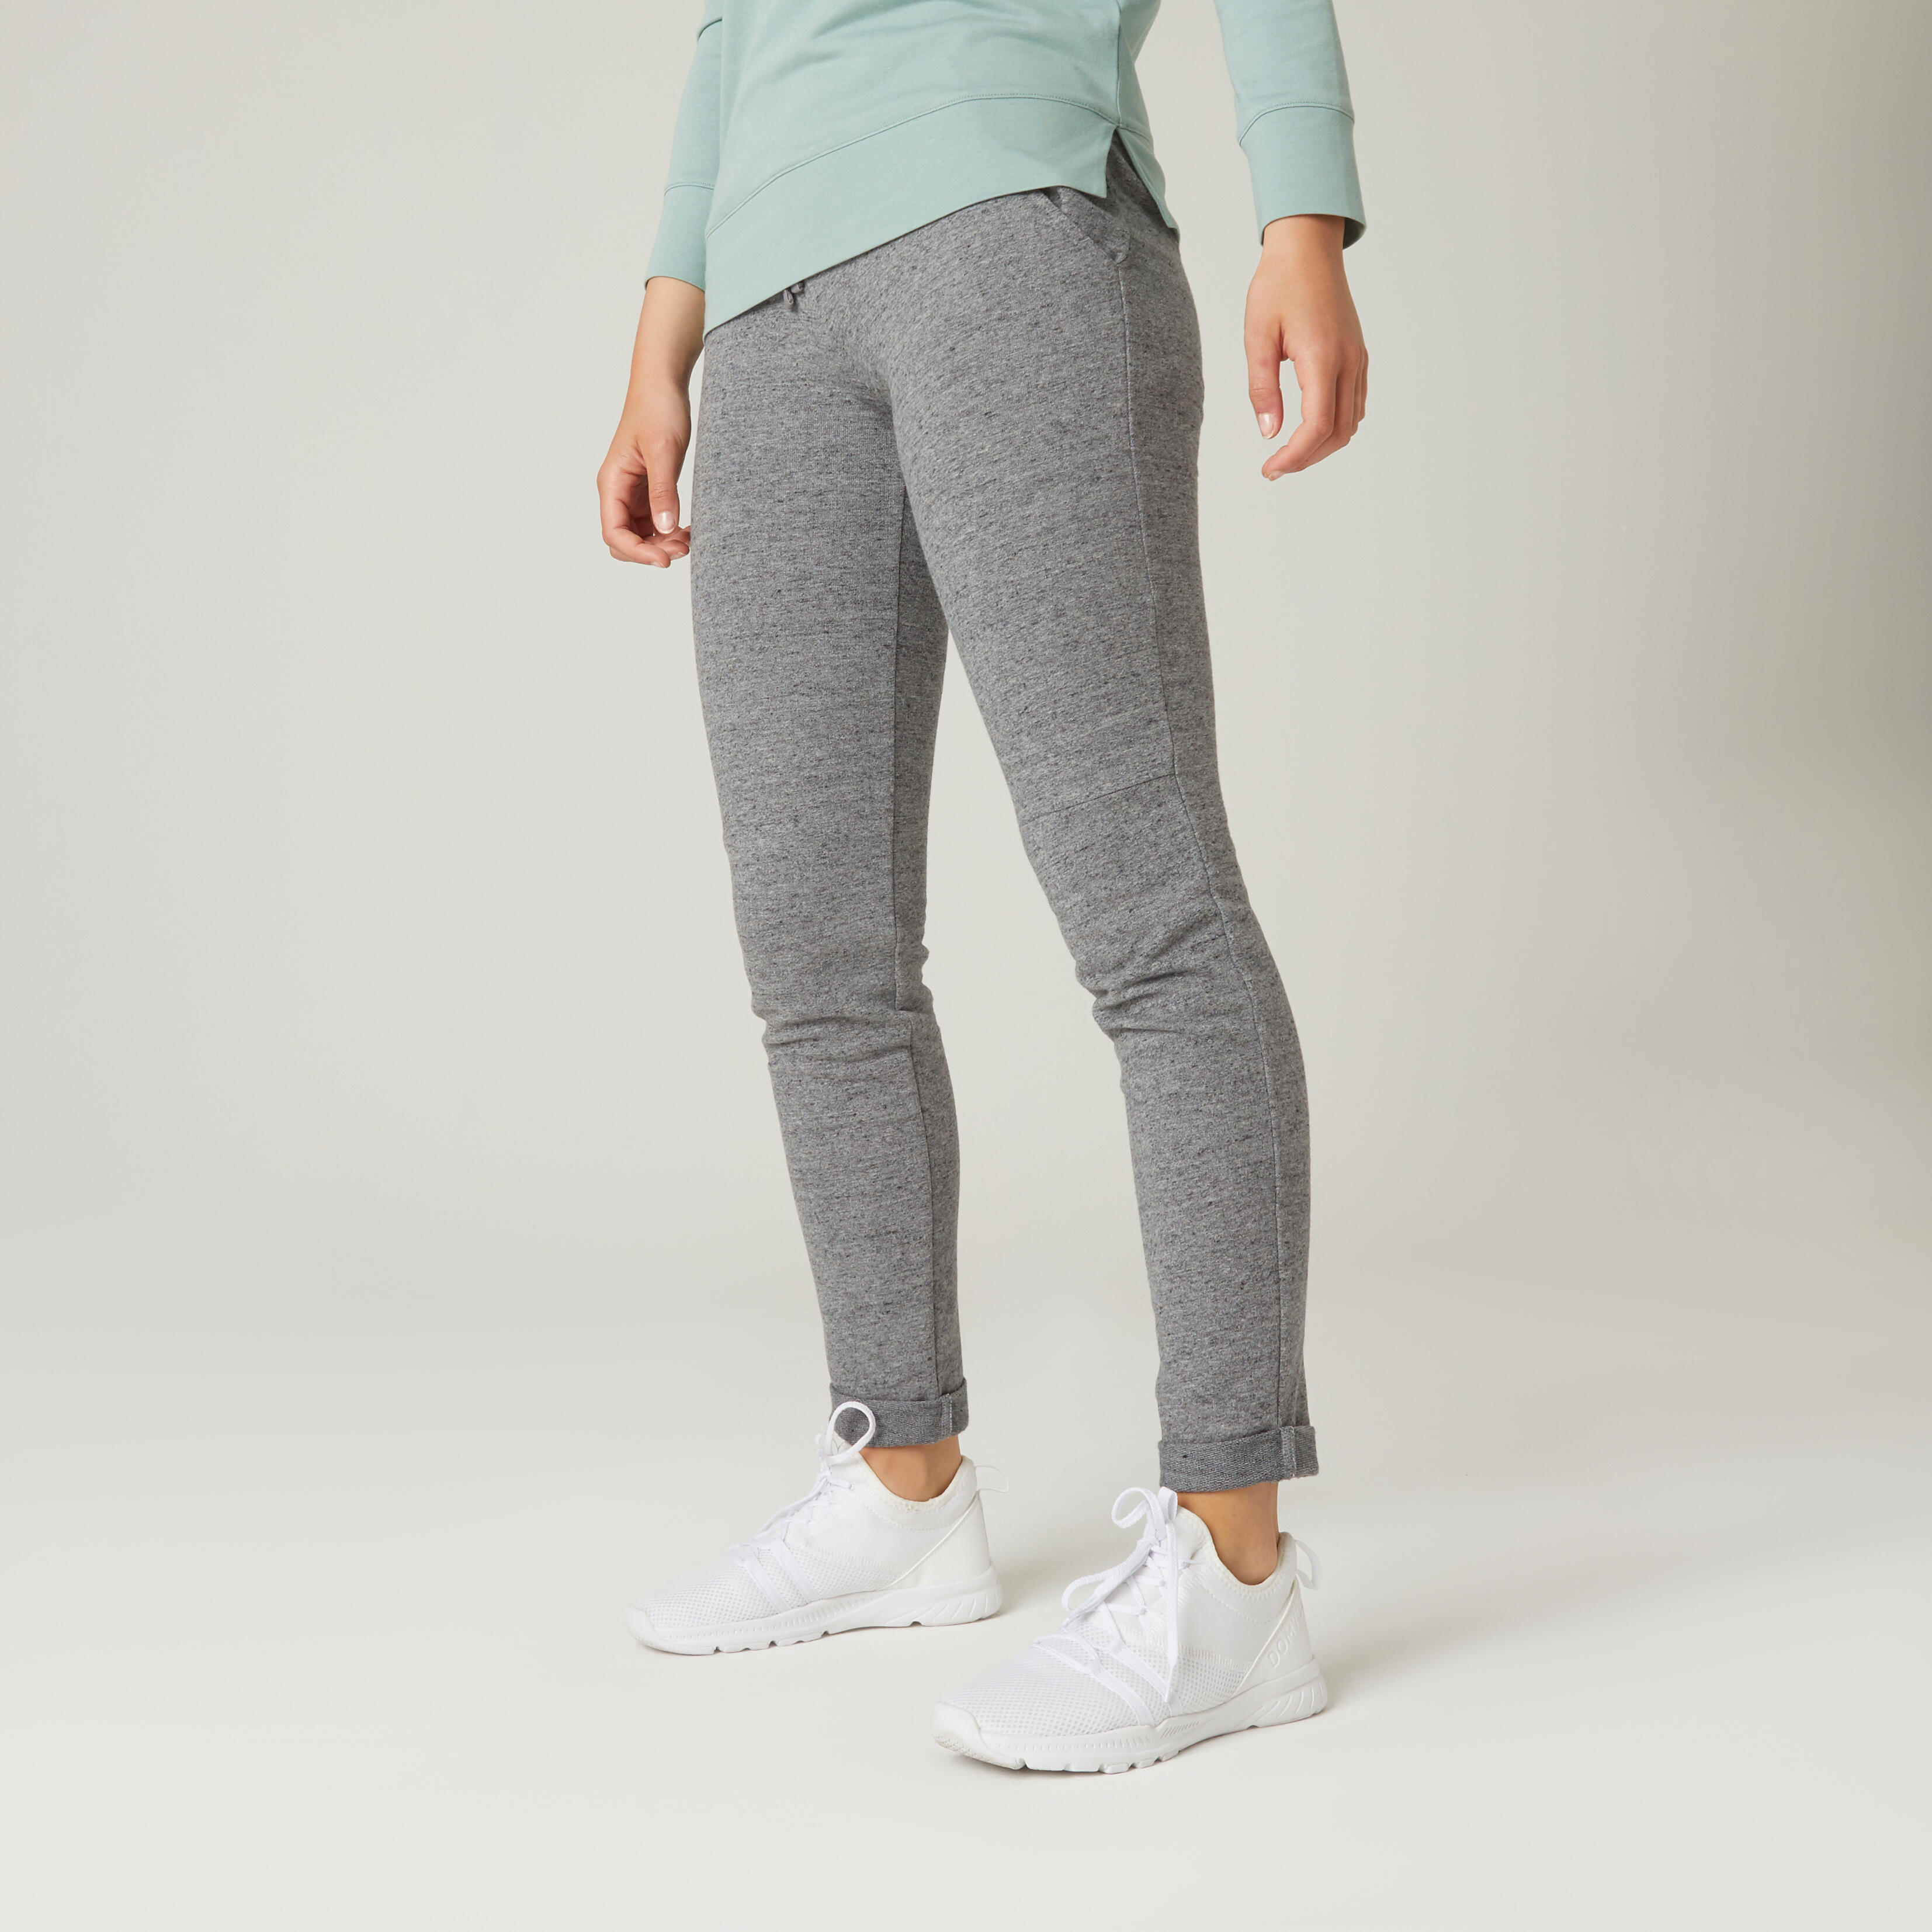 COTOP Leggings de Yoga Pantalones Deportivos Pantalones Deportivos de Cintura Alta para Correr Elásticos y Transpirables con Bolsillos Laterales para Mujeres 